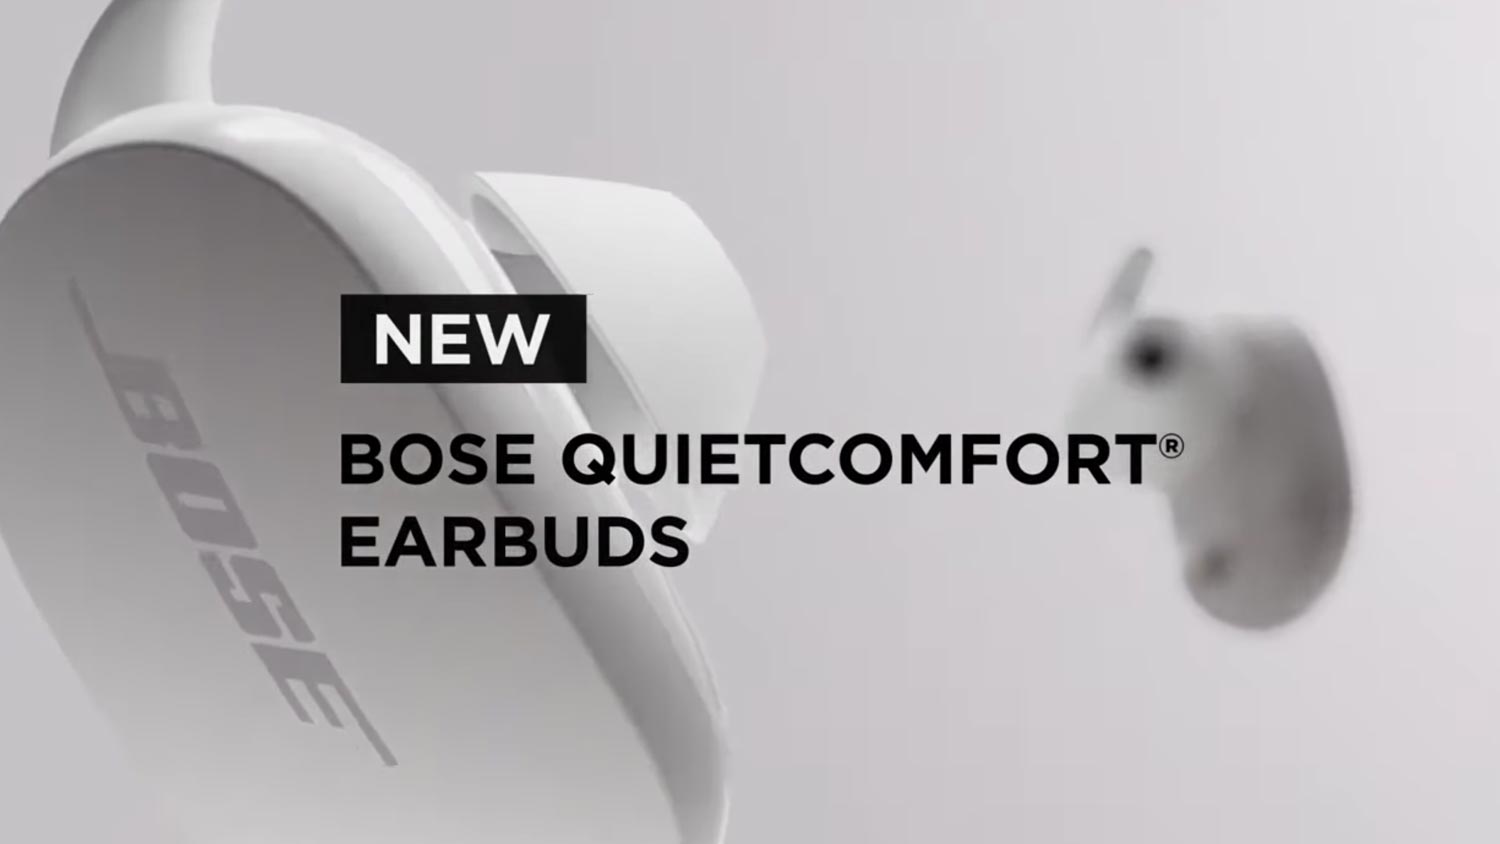 Bose ra mắt tai nghe true wirless chống ồn QuietComfort Earbuds đối đầu với Airpods Pro